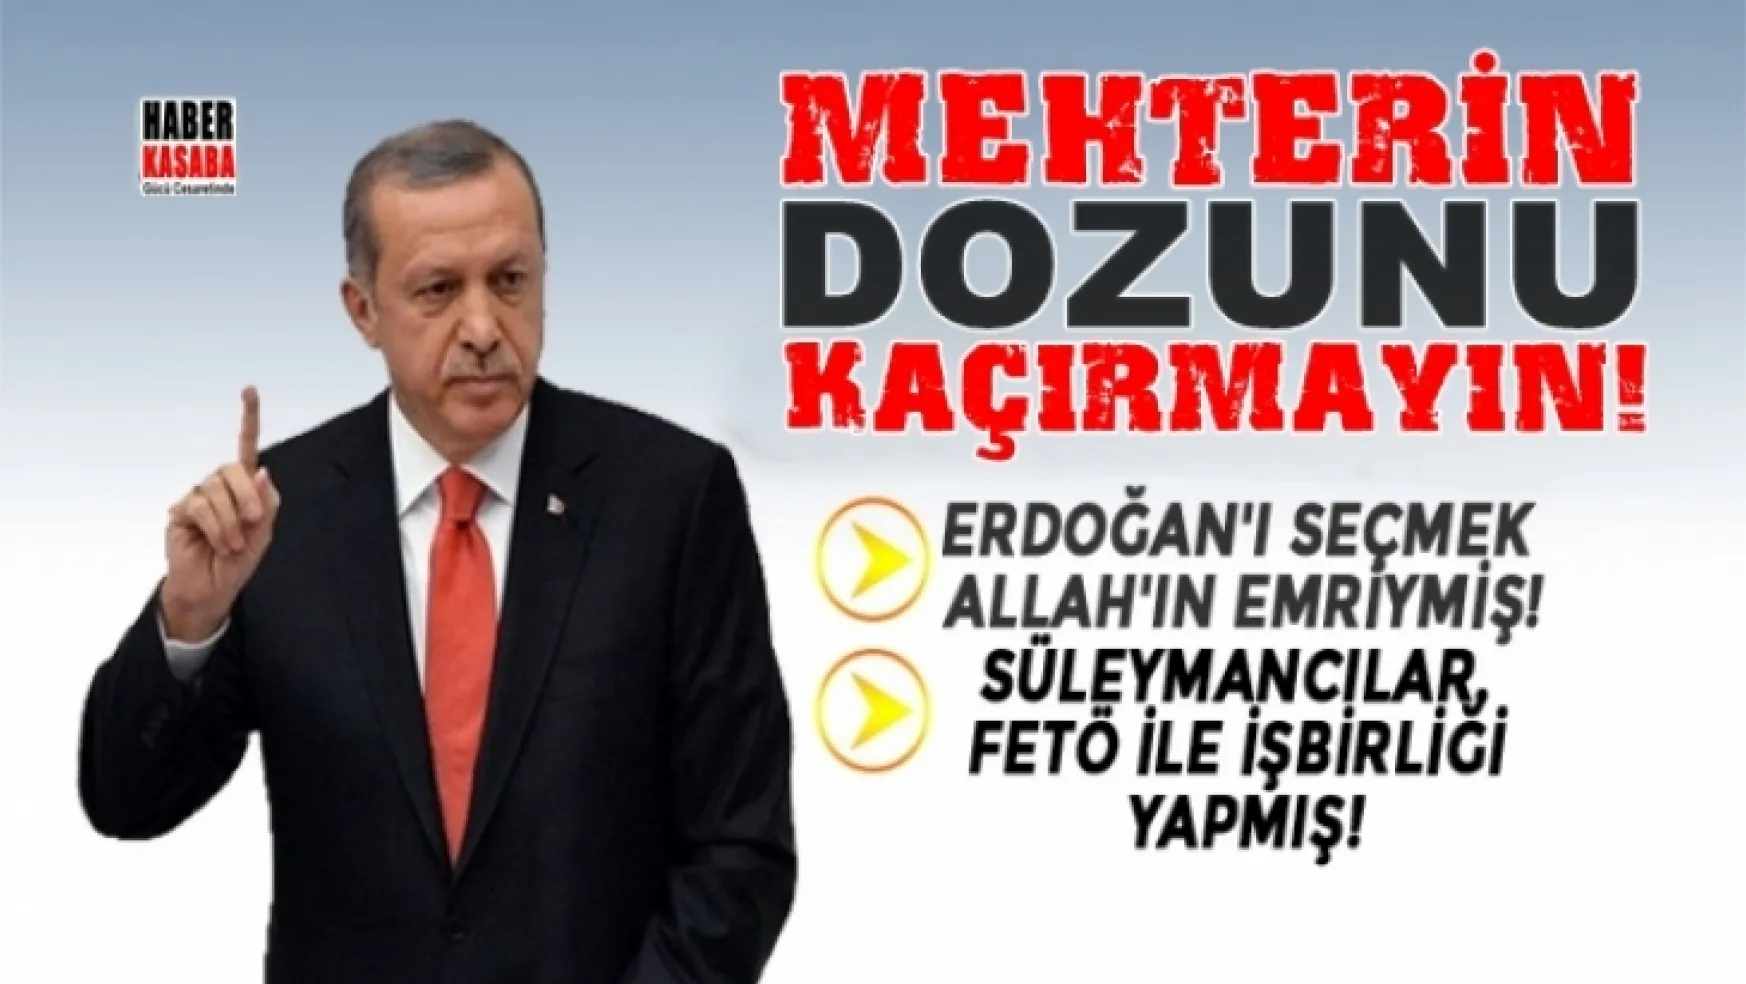 Mehterin dozunu kaçırdı! Erdoğan'ı seçmek Allah'ın emriymiş!